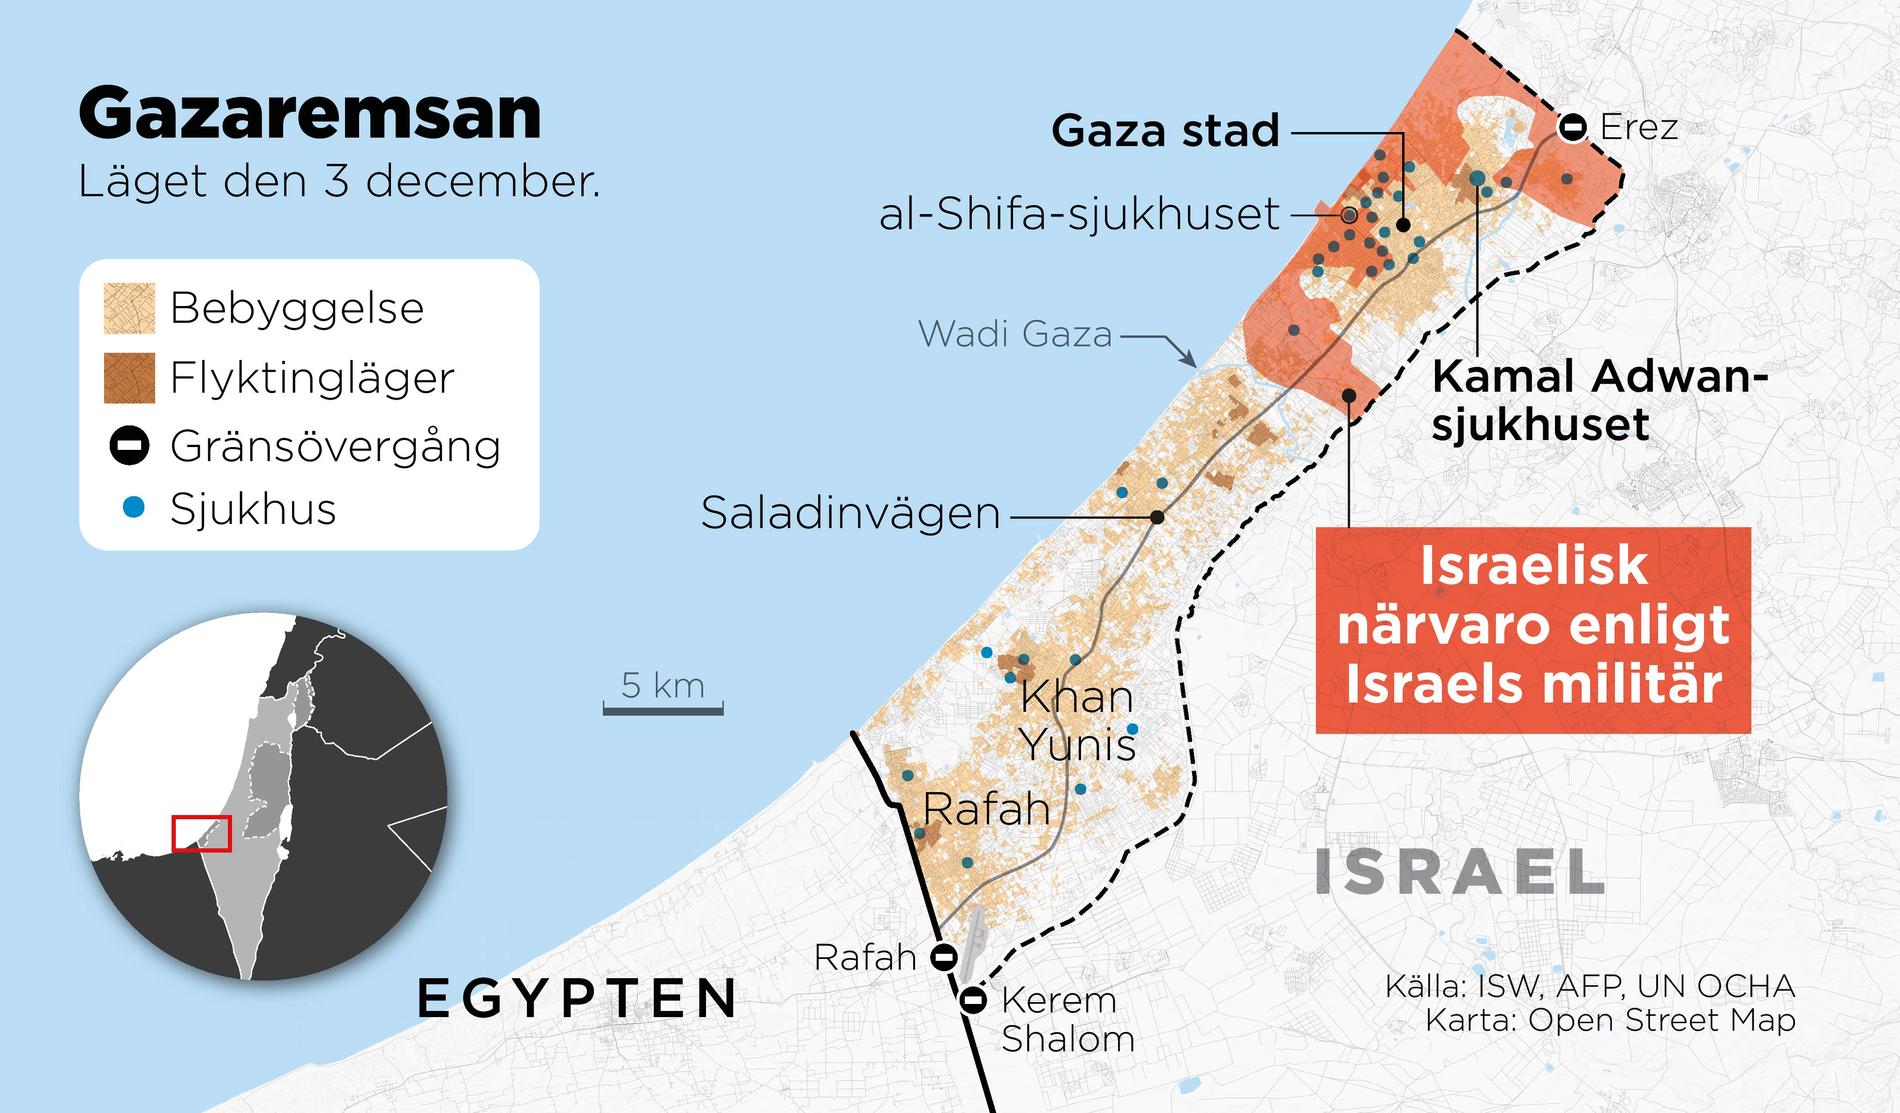 Kartan visar den omringning av Gaza stad som den israeliska militären påstår sig ha genomfört.